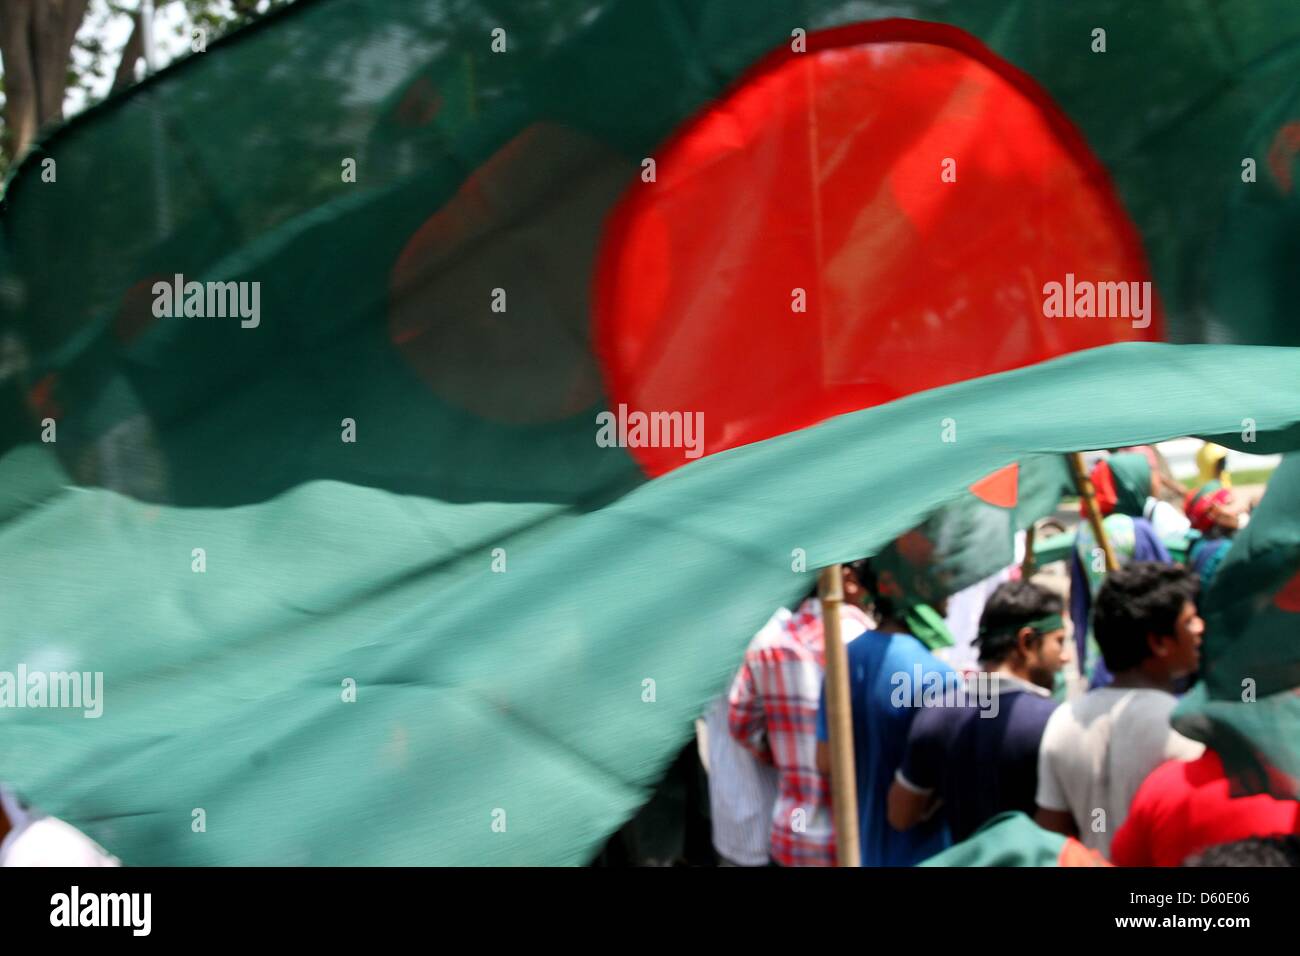 Dhaka, Bangladesh. El 8 de abril de 2013. En Bangladesh los manifestantes gritaron consignas y llevar banderas nacionales en un mitin anti-huelga en toda la nación durante una huelga convocada por los islamistas en Dhaka el 8 de abril de 2013. Organistaion islamista, Hefajat-e-Islam llamado una huelga nacional para presionar al parlamento nacional de promulgar una ley blasphmey destinada a perseguir los bloggers acusado de insultar al Islam y al Profeta Mahoma en el país de mayoría musulmana. Foto de stock